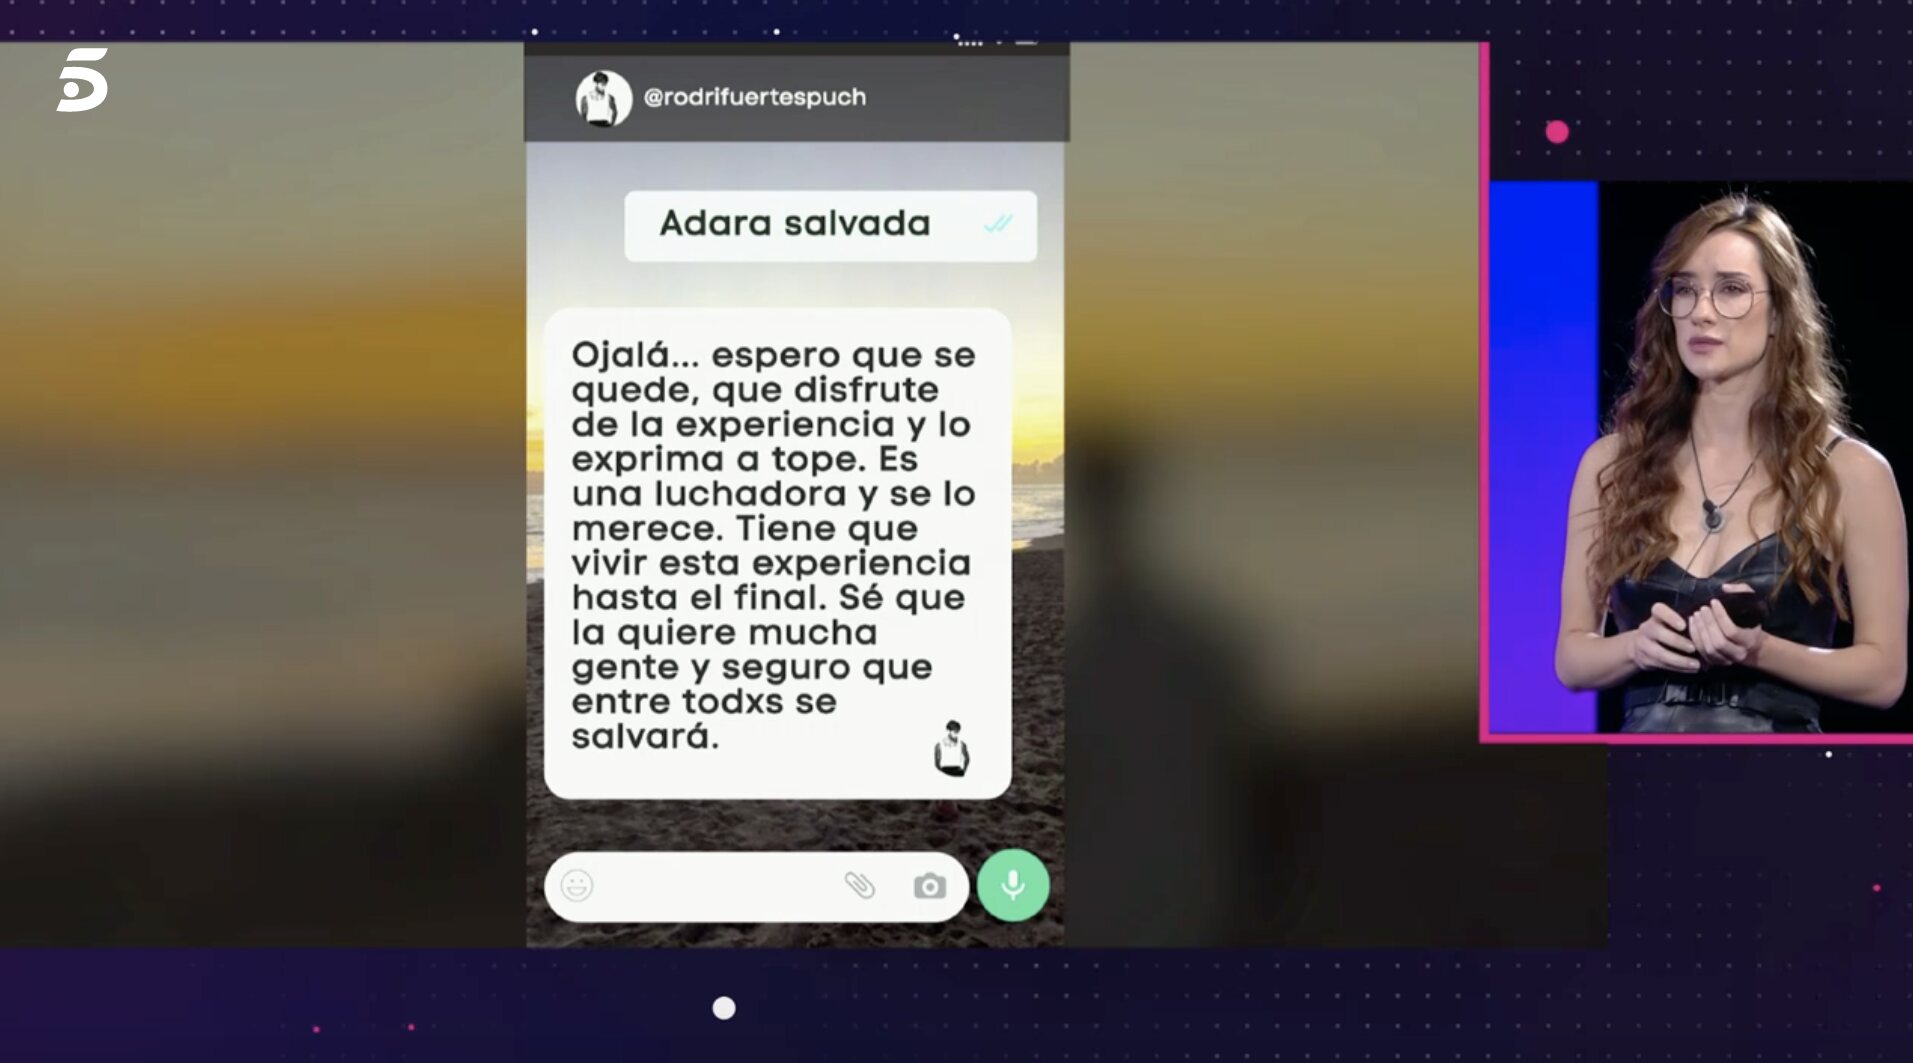 Adara ha podido leer un nuevo mensaje de apoyo de Rodri Fuertes | Foto: Telecinco.es